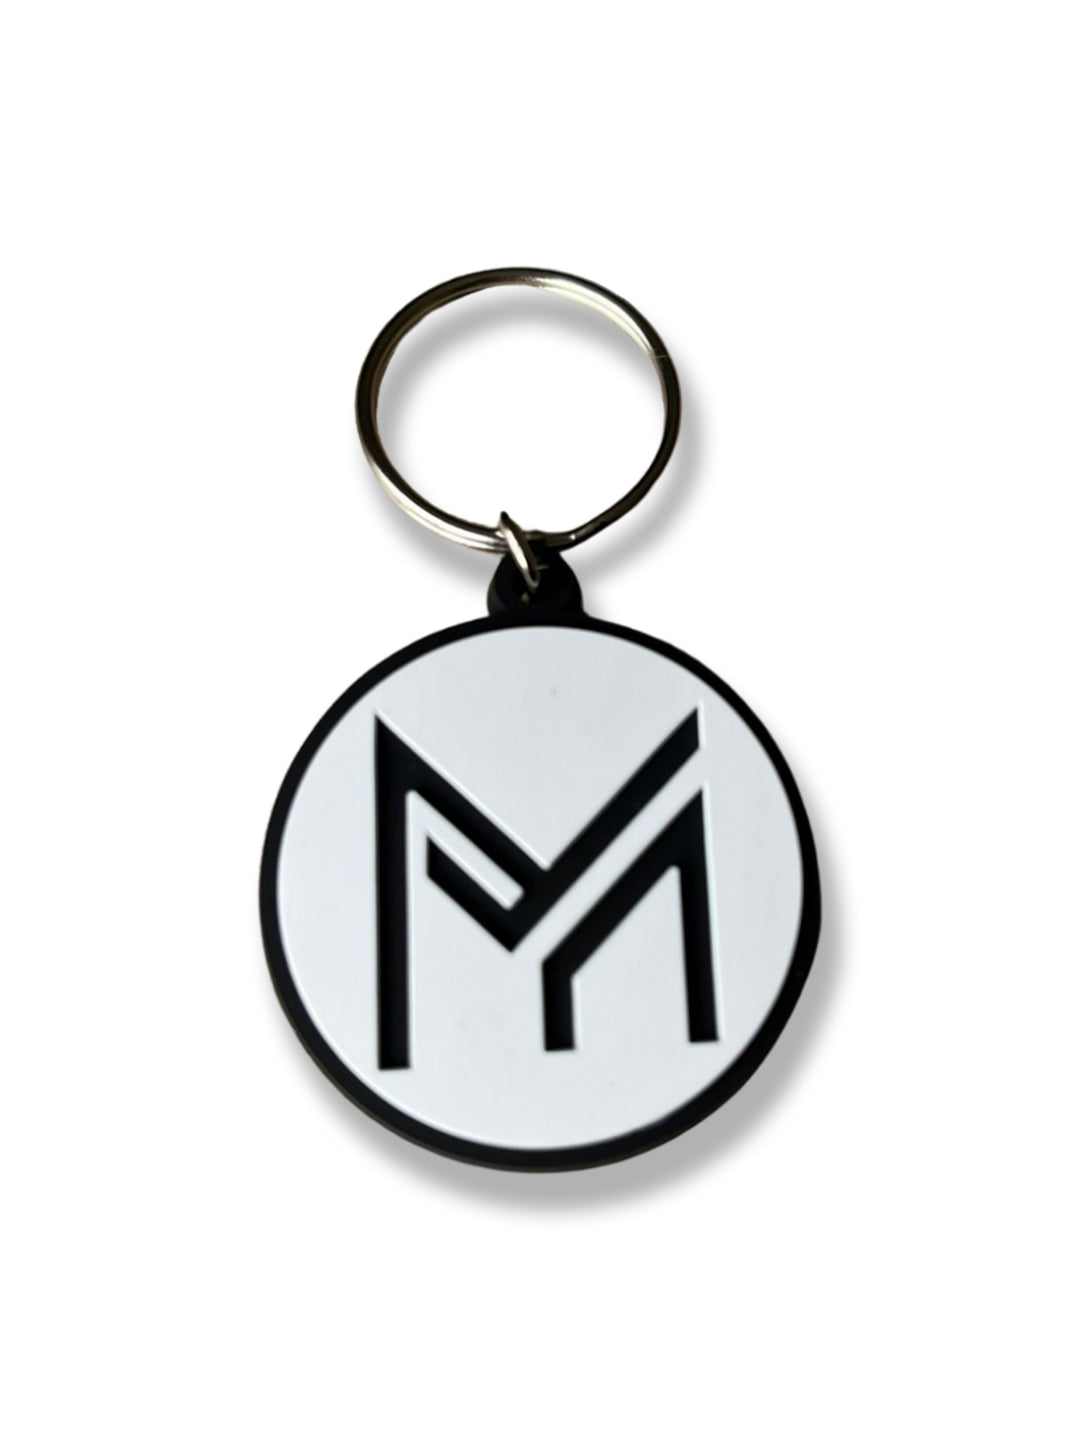 Vue de face du porte-clés circulaire avec logo Mucho